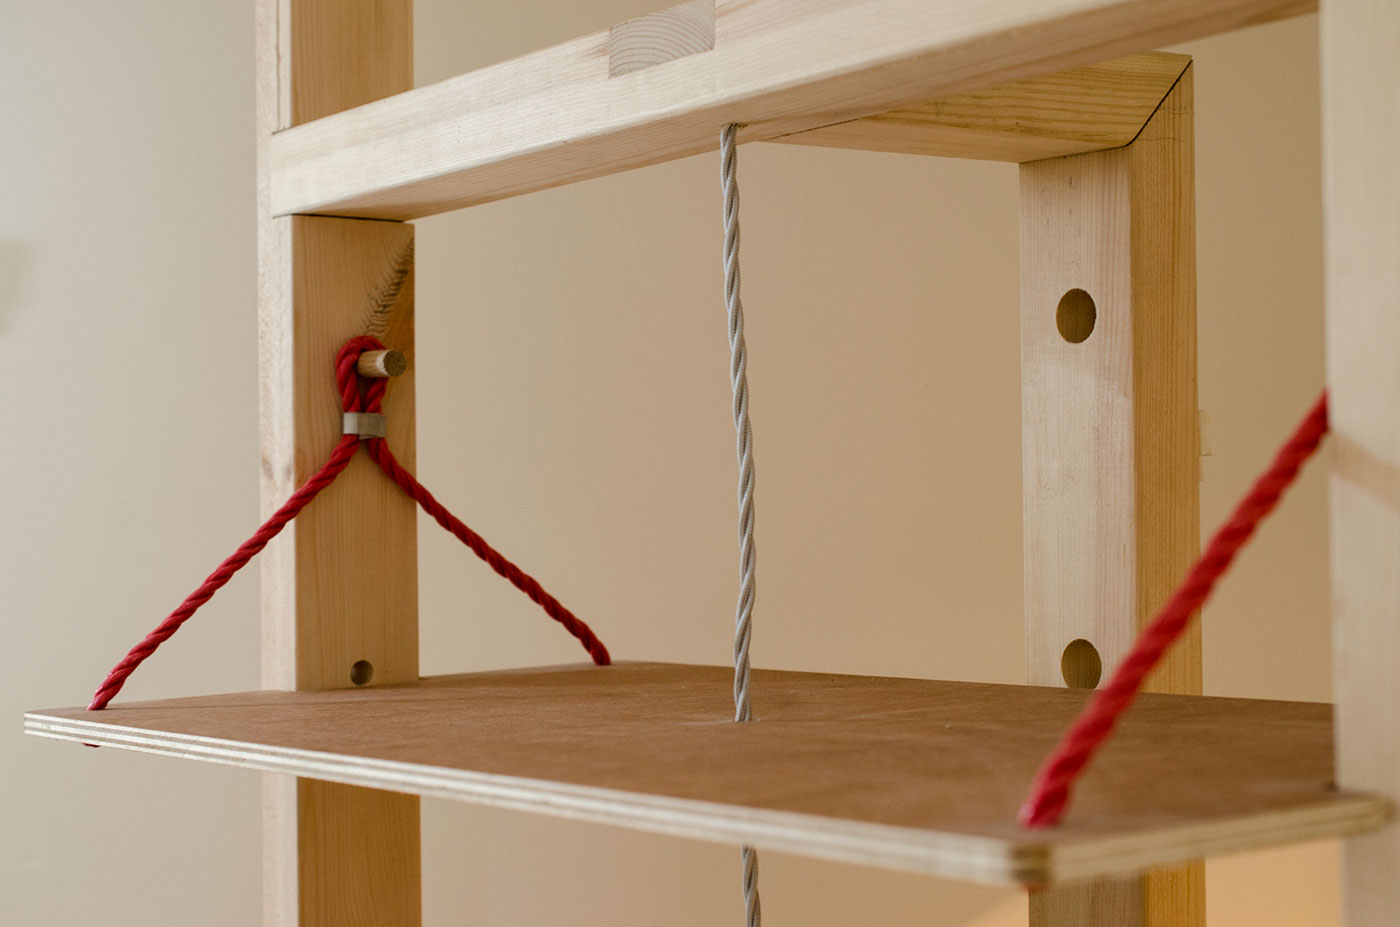 Shelving hanging Interior Suspension Shelf furniture Indoors design adjustable